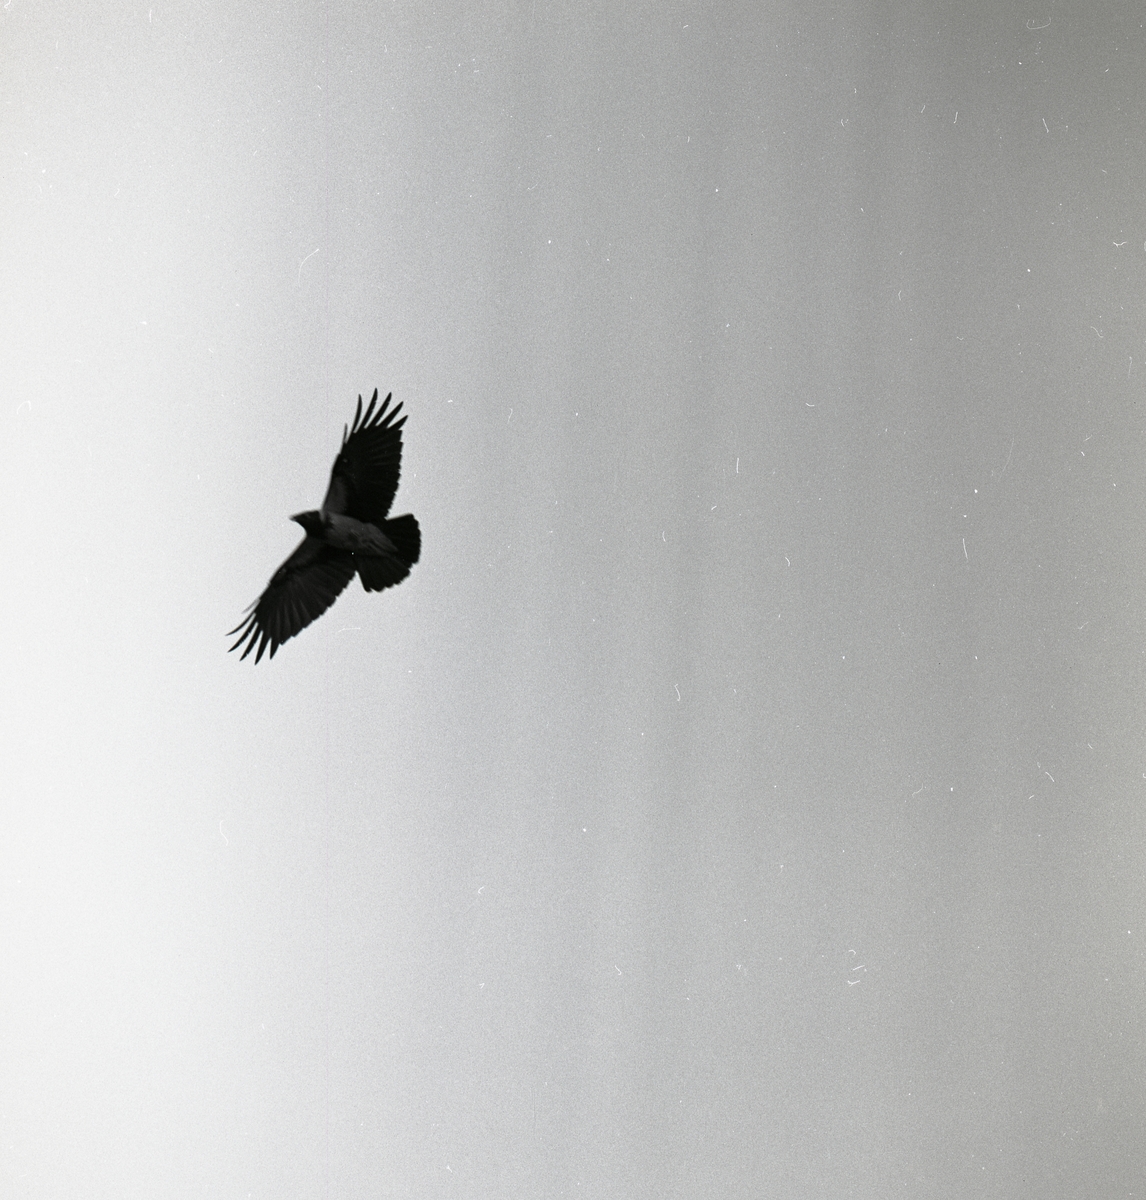 En kråka breder ut sina vingar när den flyger över fotografen.